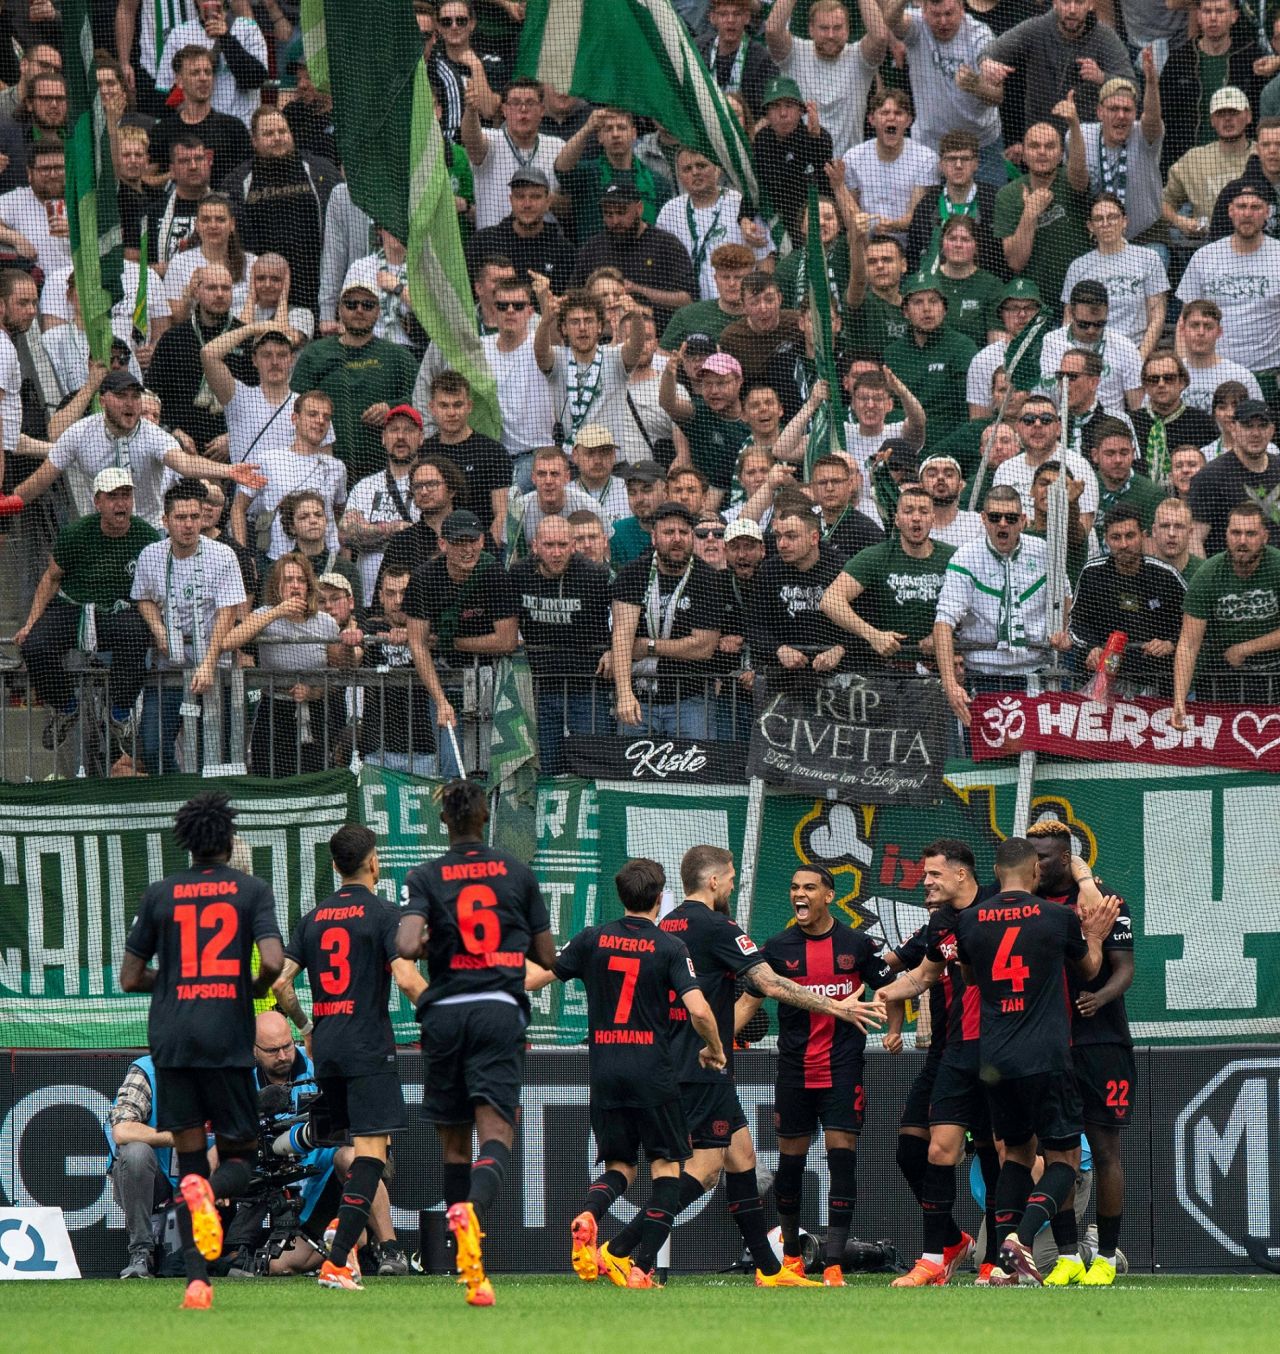 Imaginile bucuriei! Bayer Leverkusen, campioană pentru prima dată în istorie! Fanii au luat cu asalt arena_18